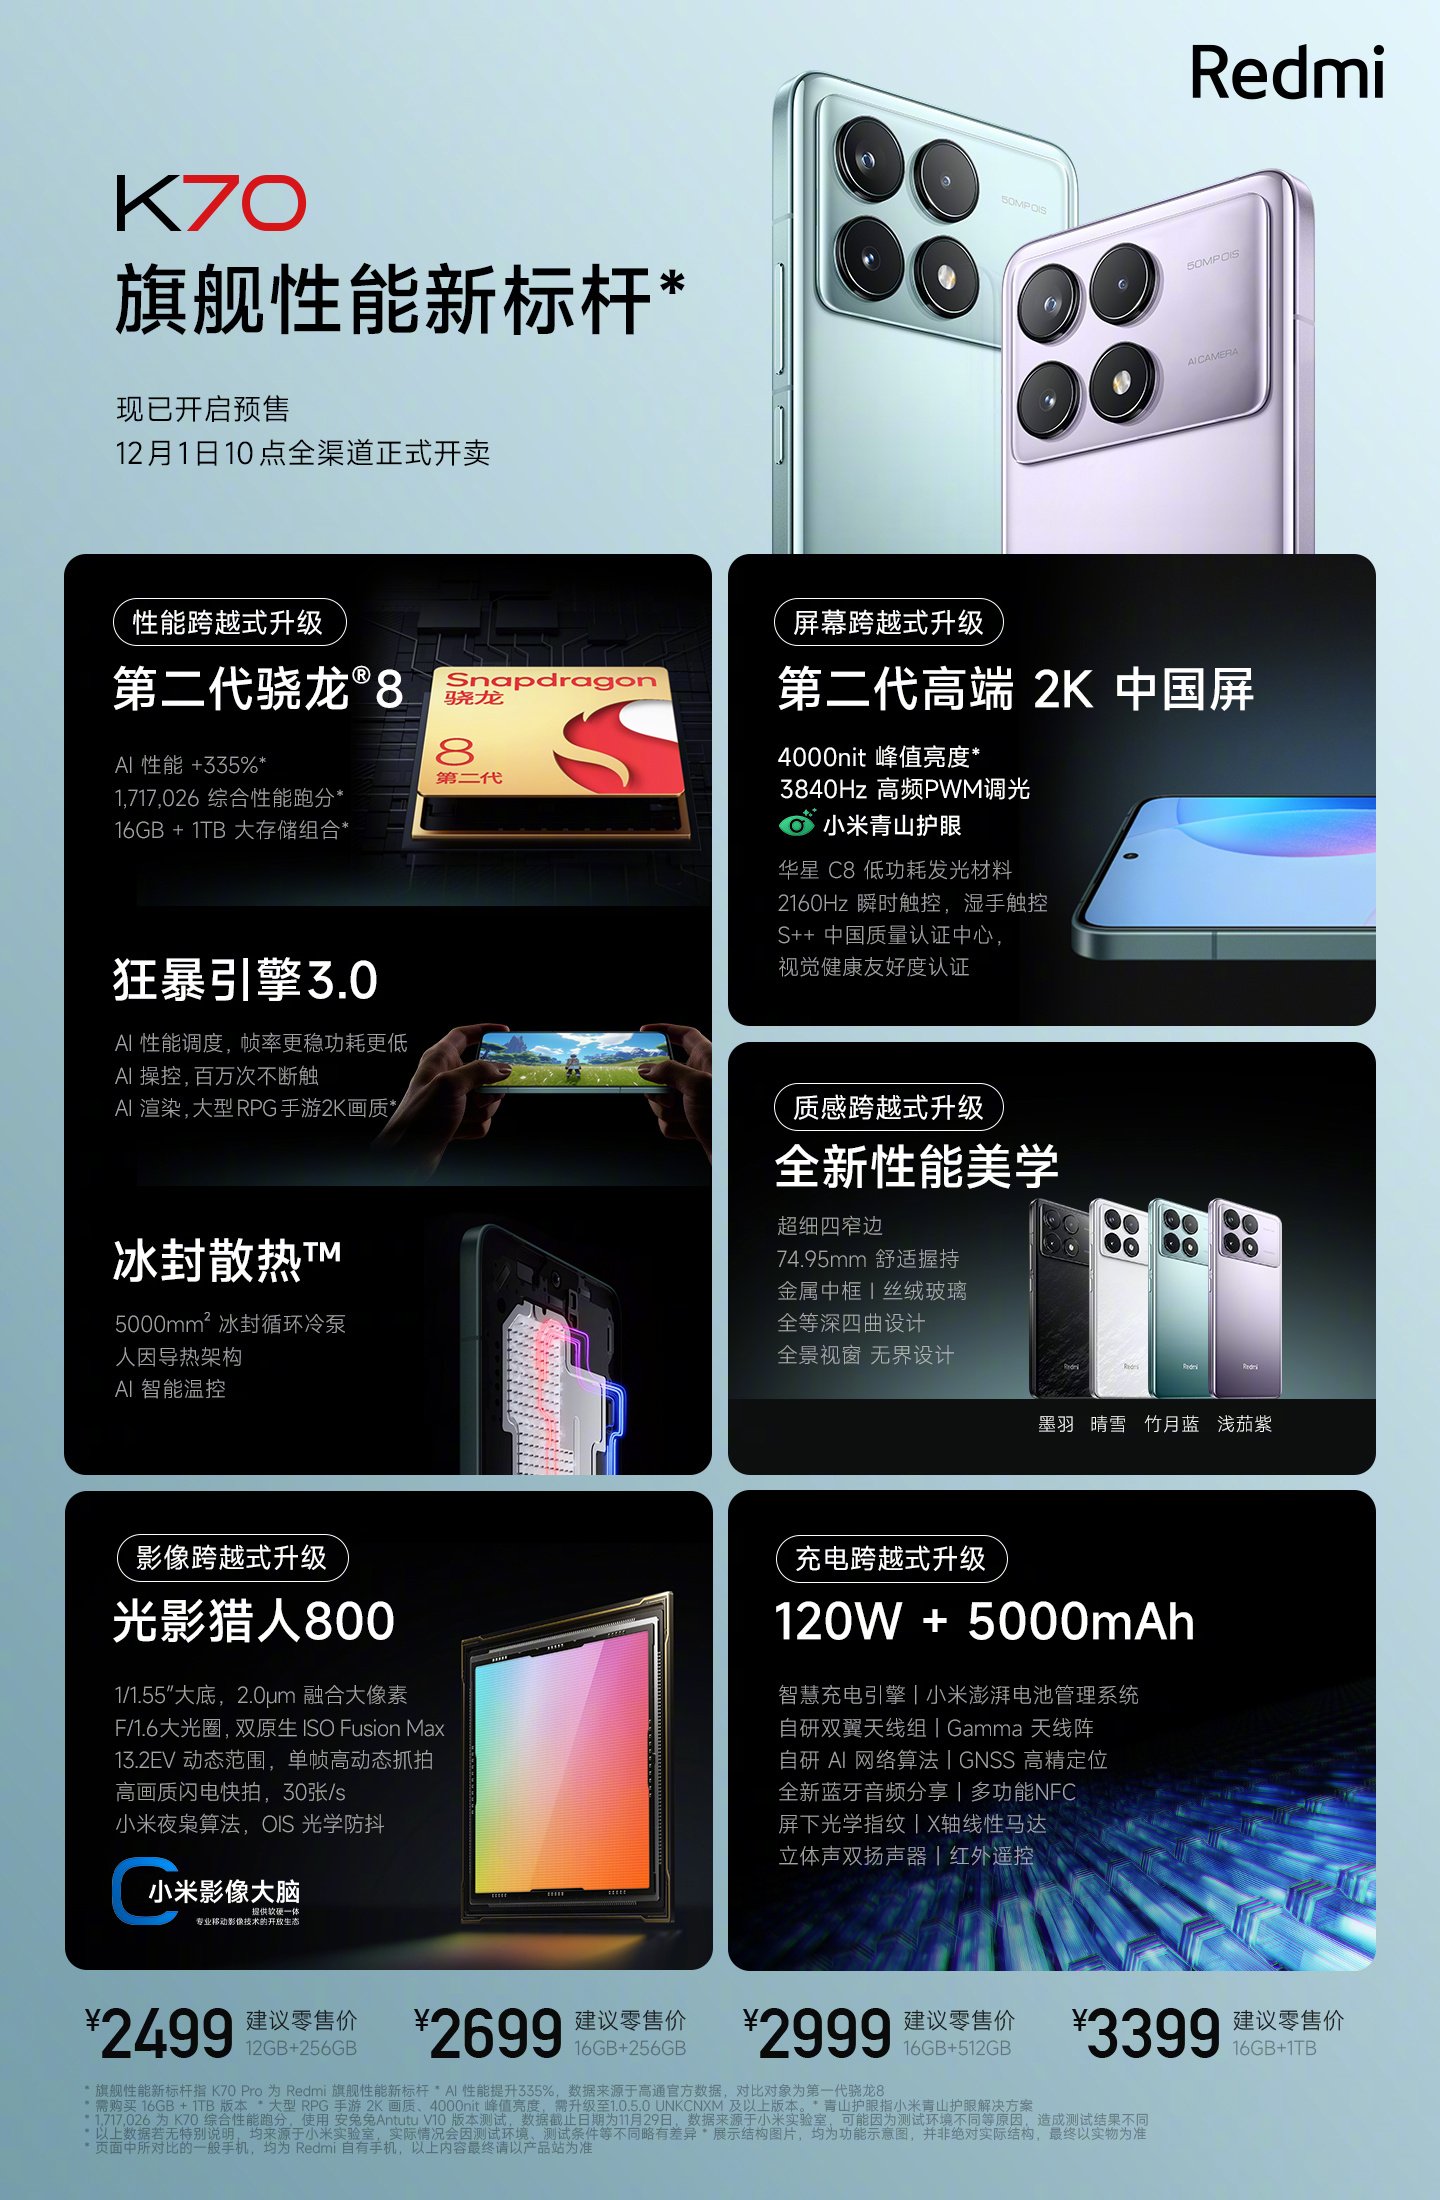 Xiaomi Redmi K70 and Xiaomi Redmi K70 Pro are unveiled